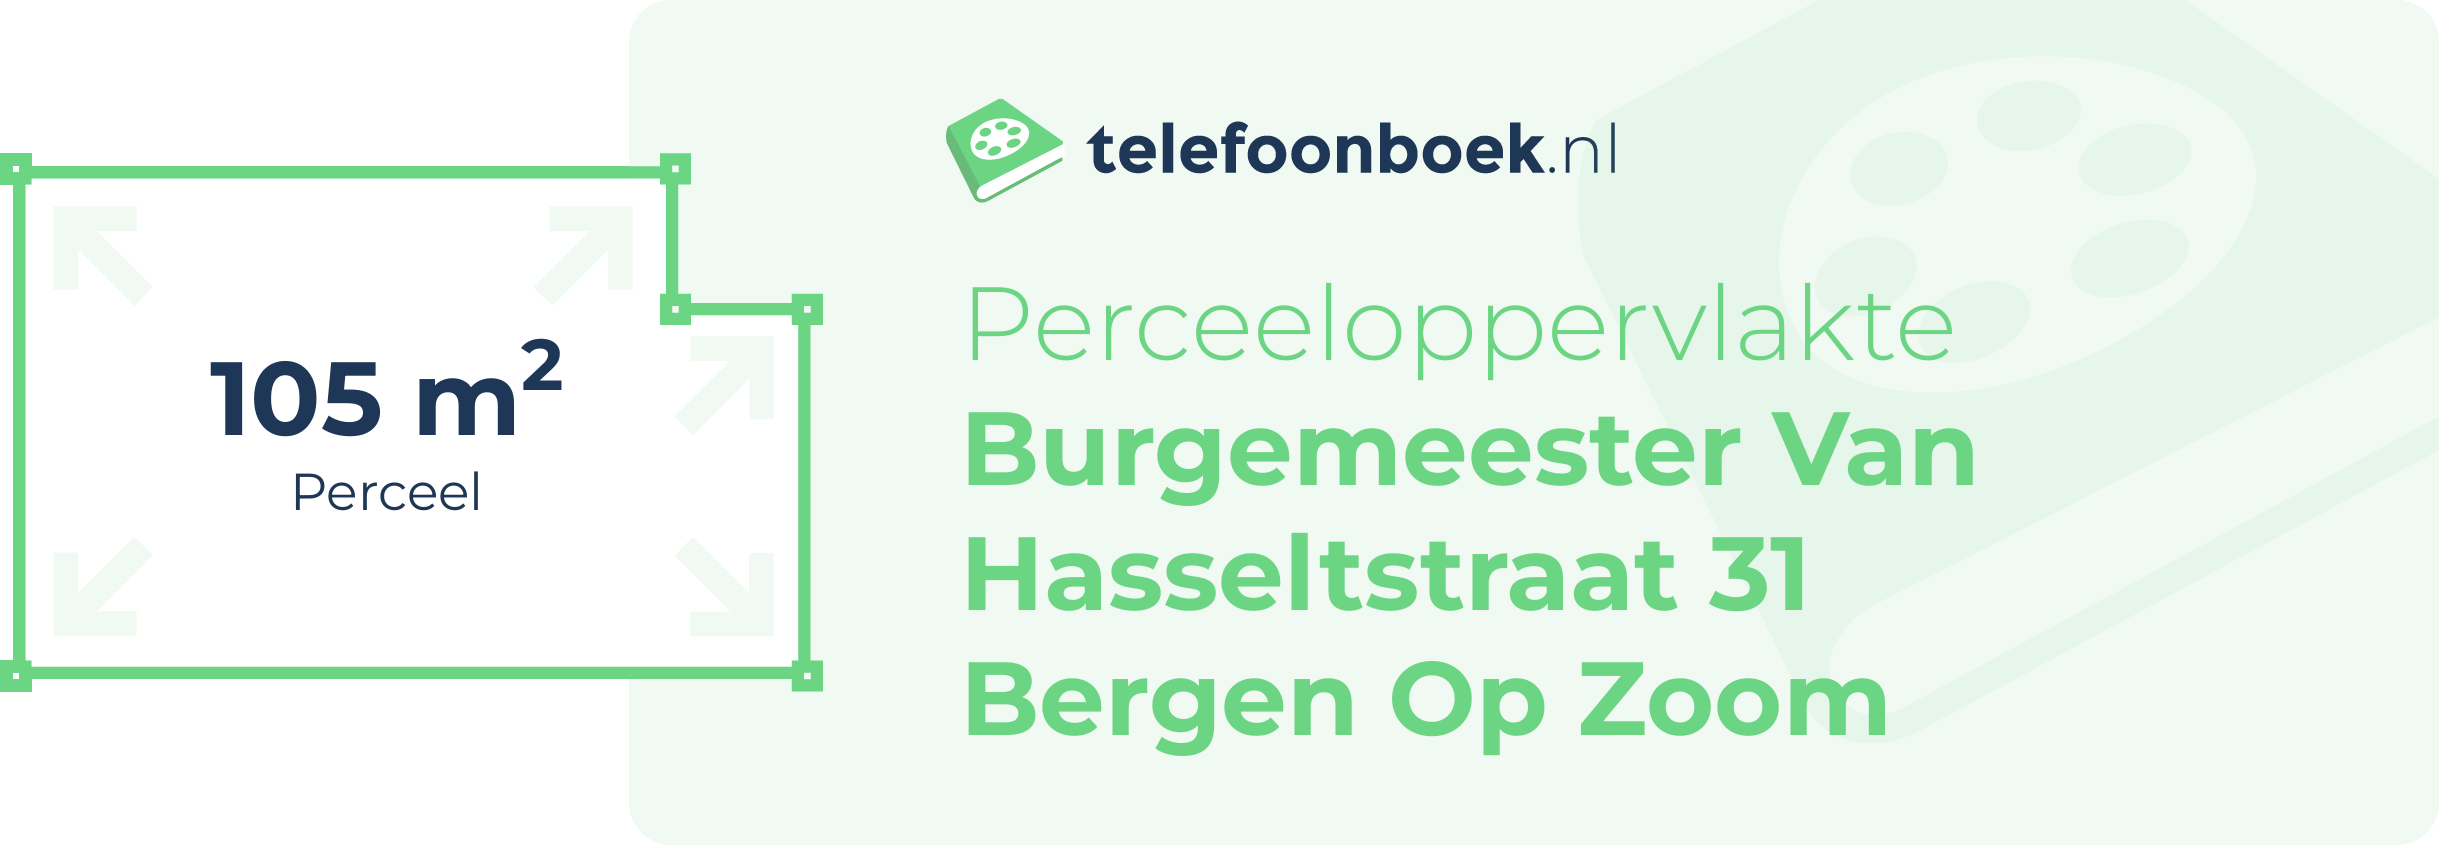 Perceeloppervlakte Burgemeester Van Hasseltstraat 31 Bergen Op Zoom